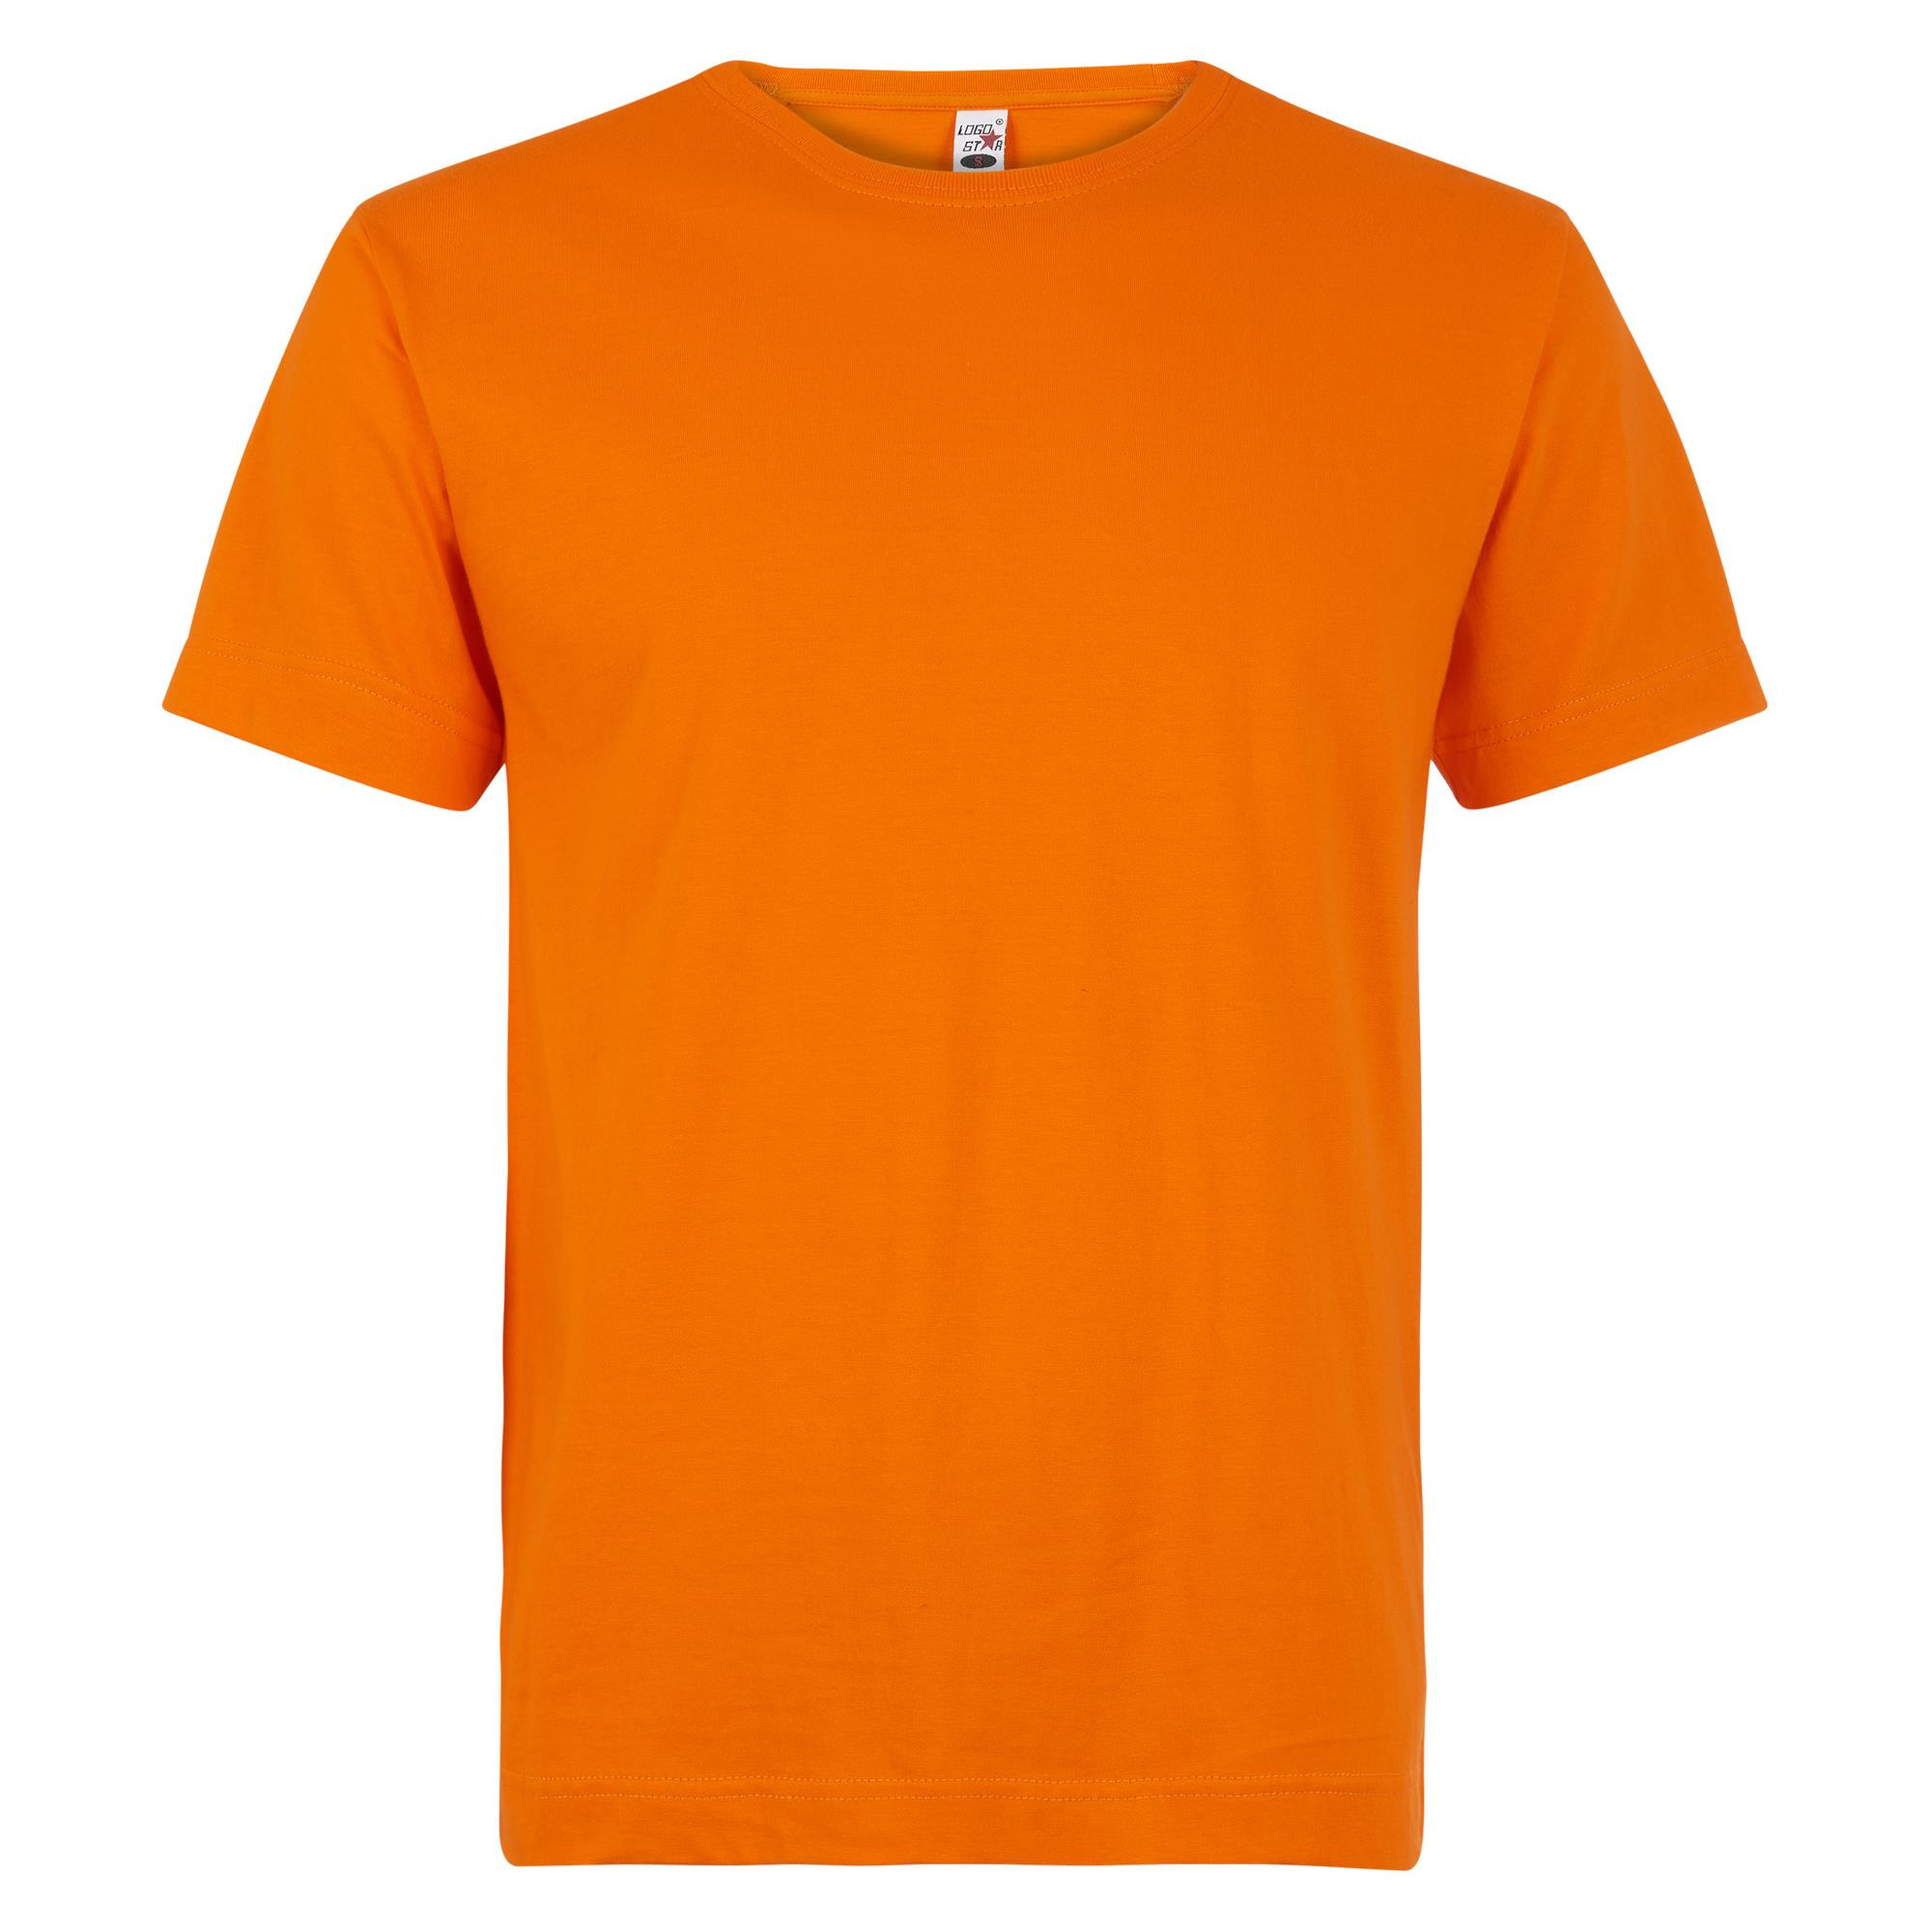 Grote maat t-shirts oranje